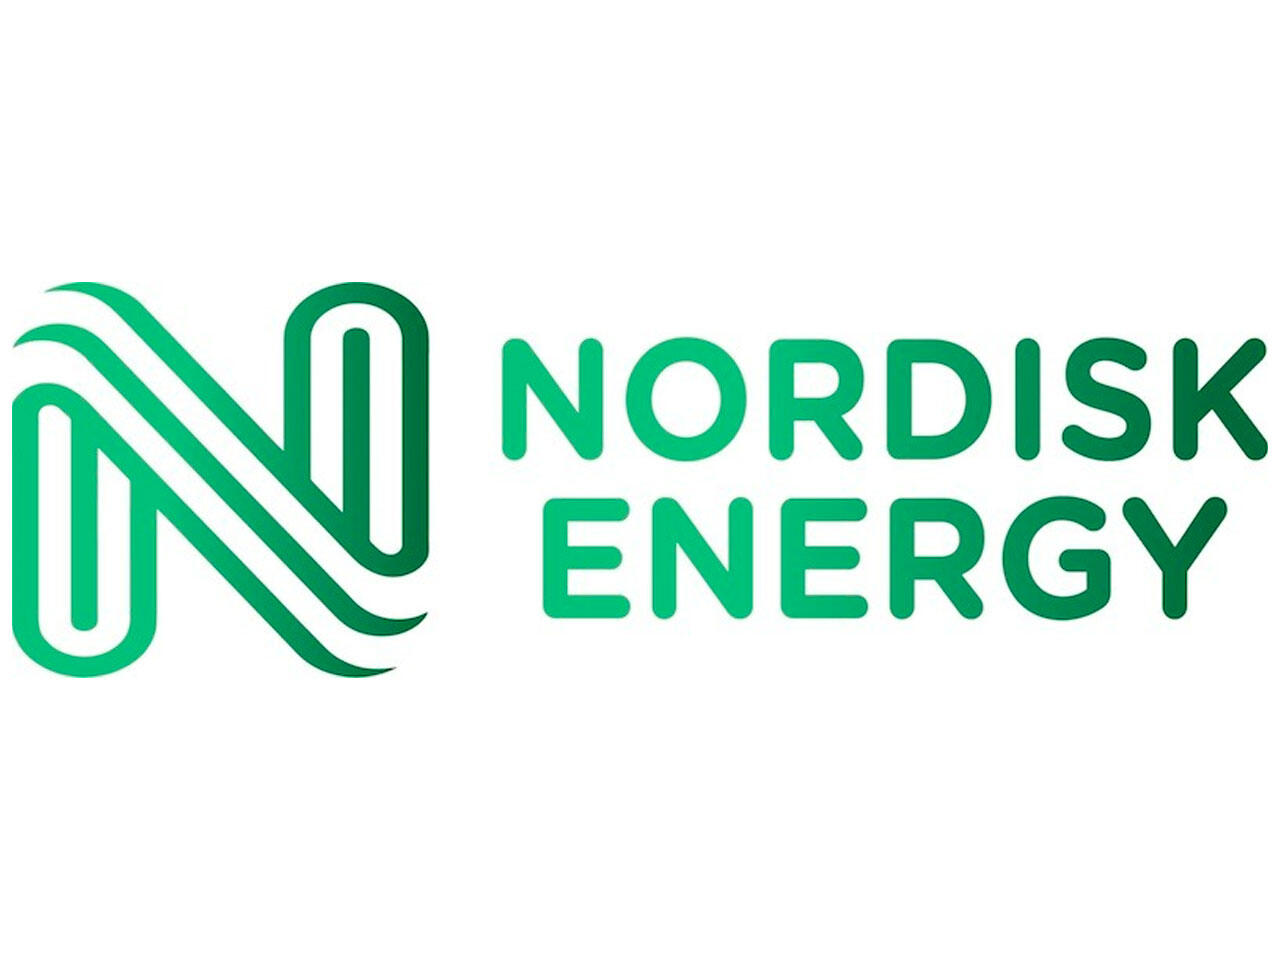 Nordisk variabel pris Nordisk Energy